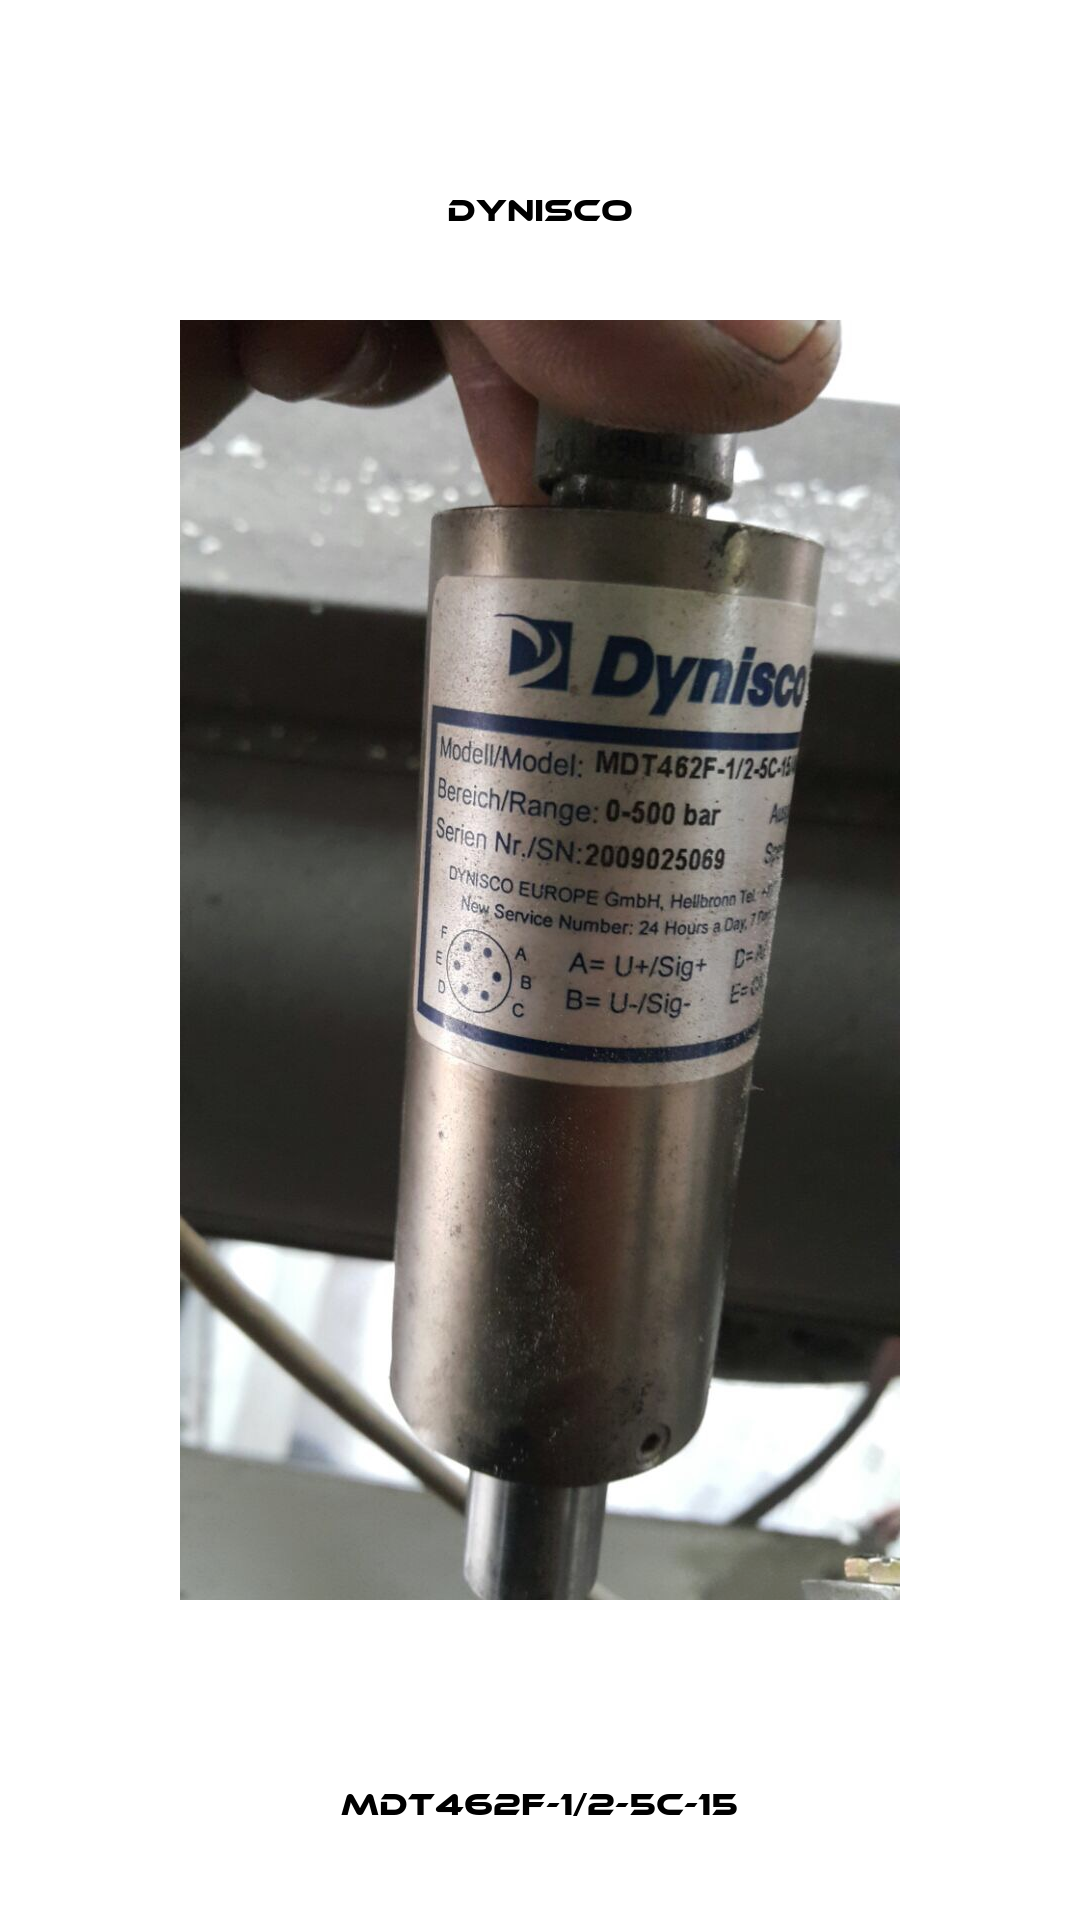 MDT462F-1/2-5C-15 Dynisco